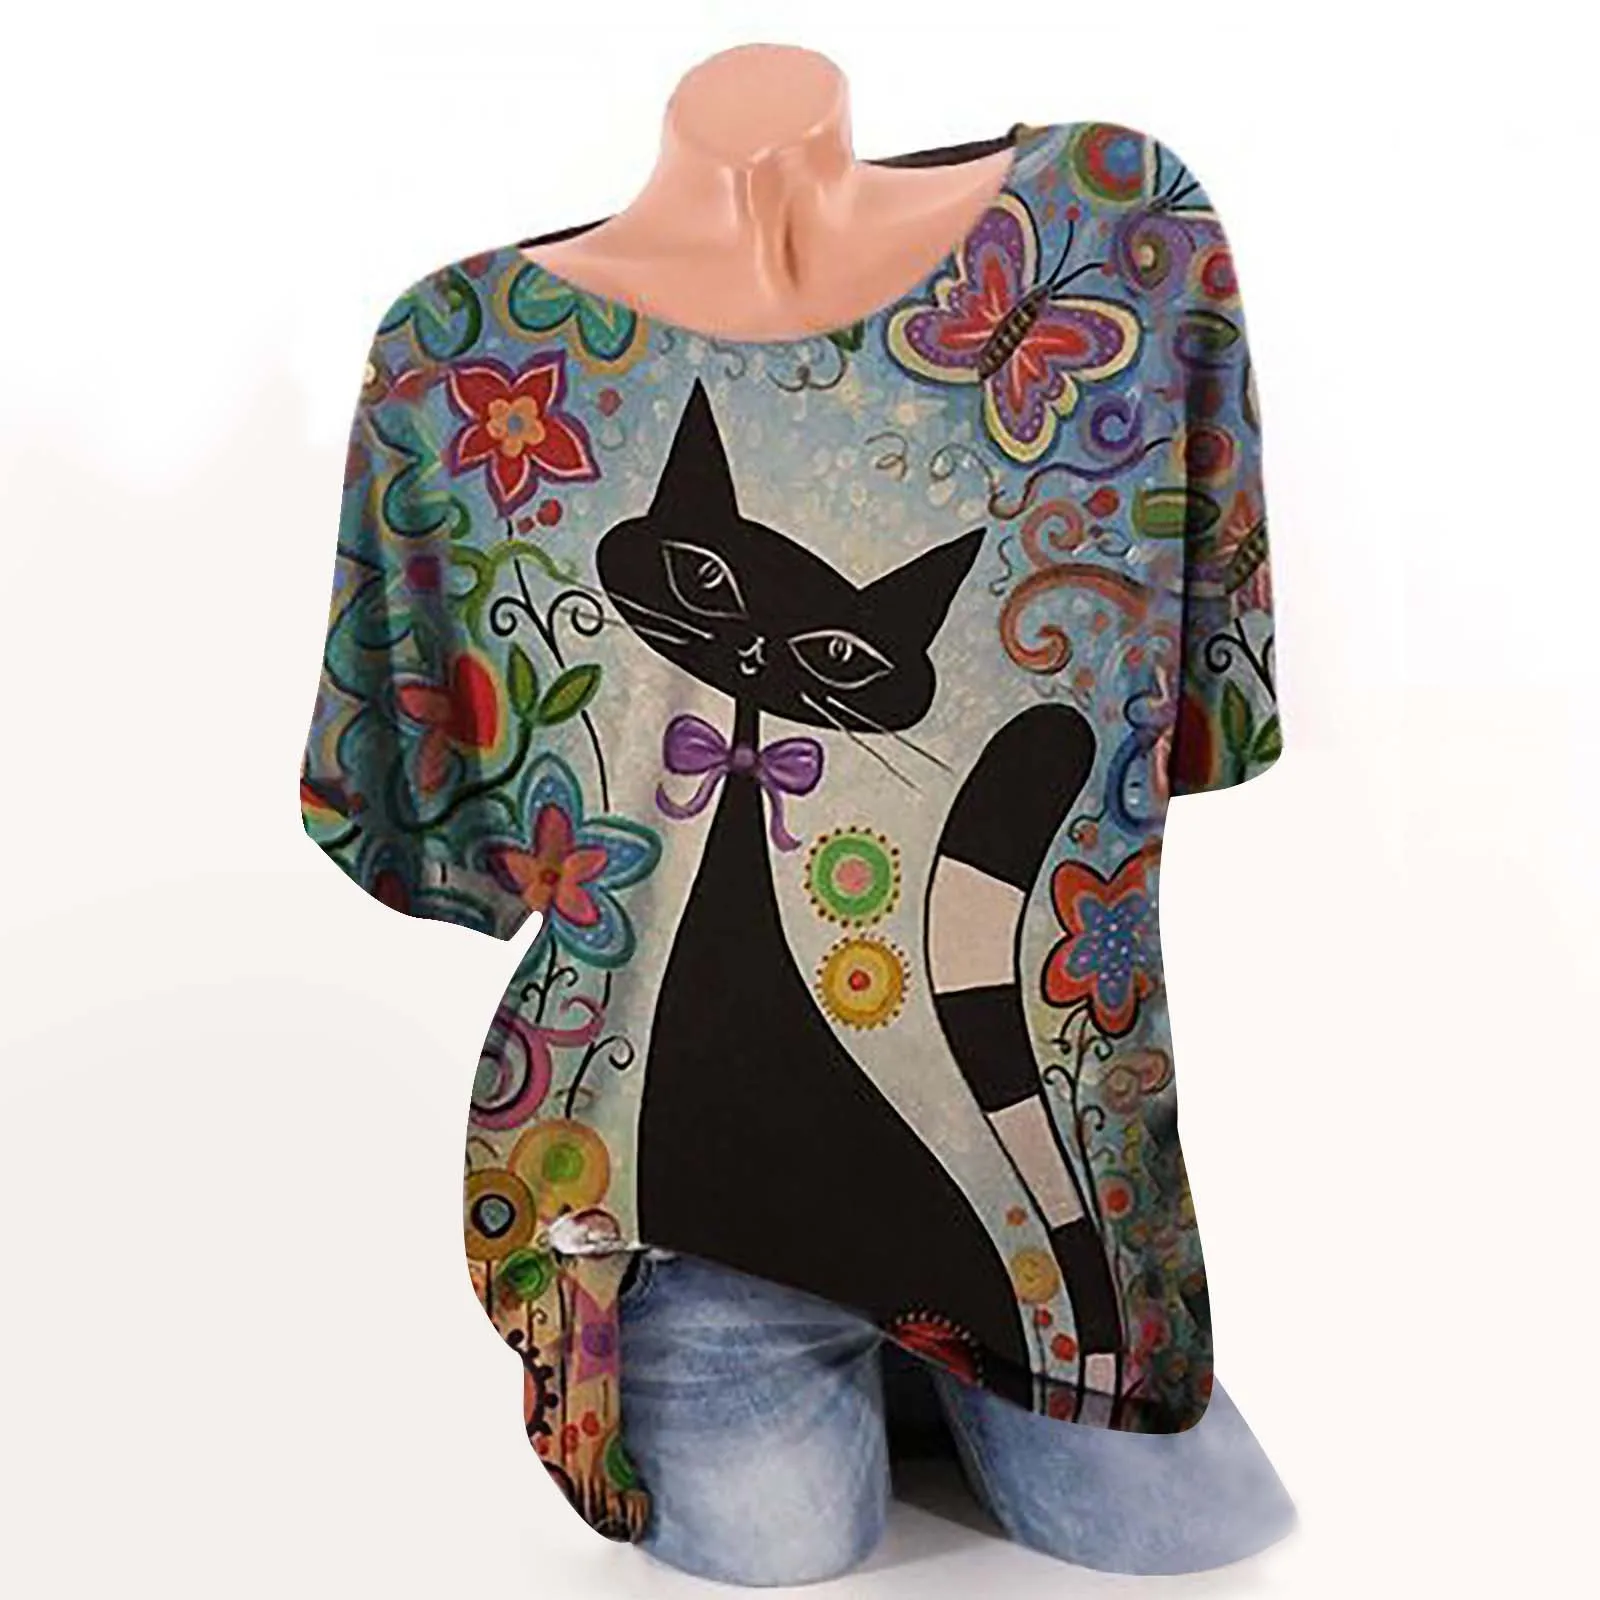 Tasa de descuento Blusa holgada informal con manga corta para otoño, camisa blusa holgada con botones para mujer, estampado de gato, girasol, 4 # oo3KMedAwGR